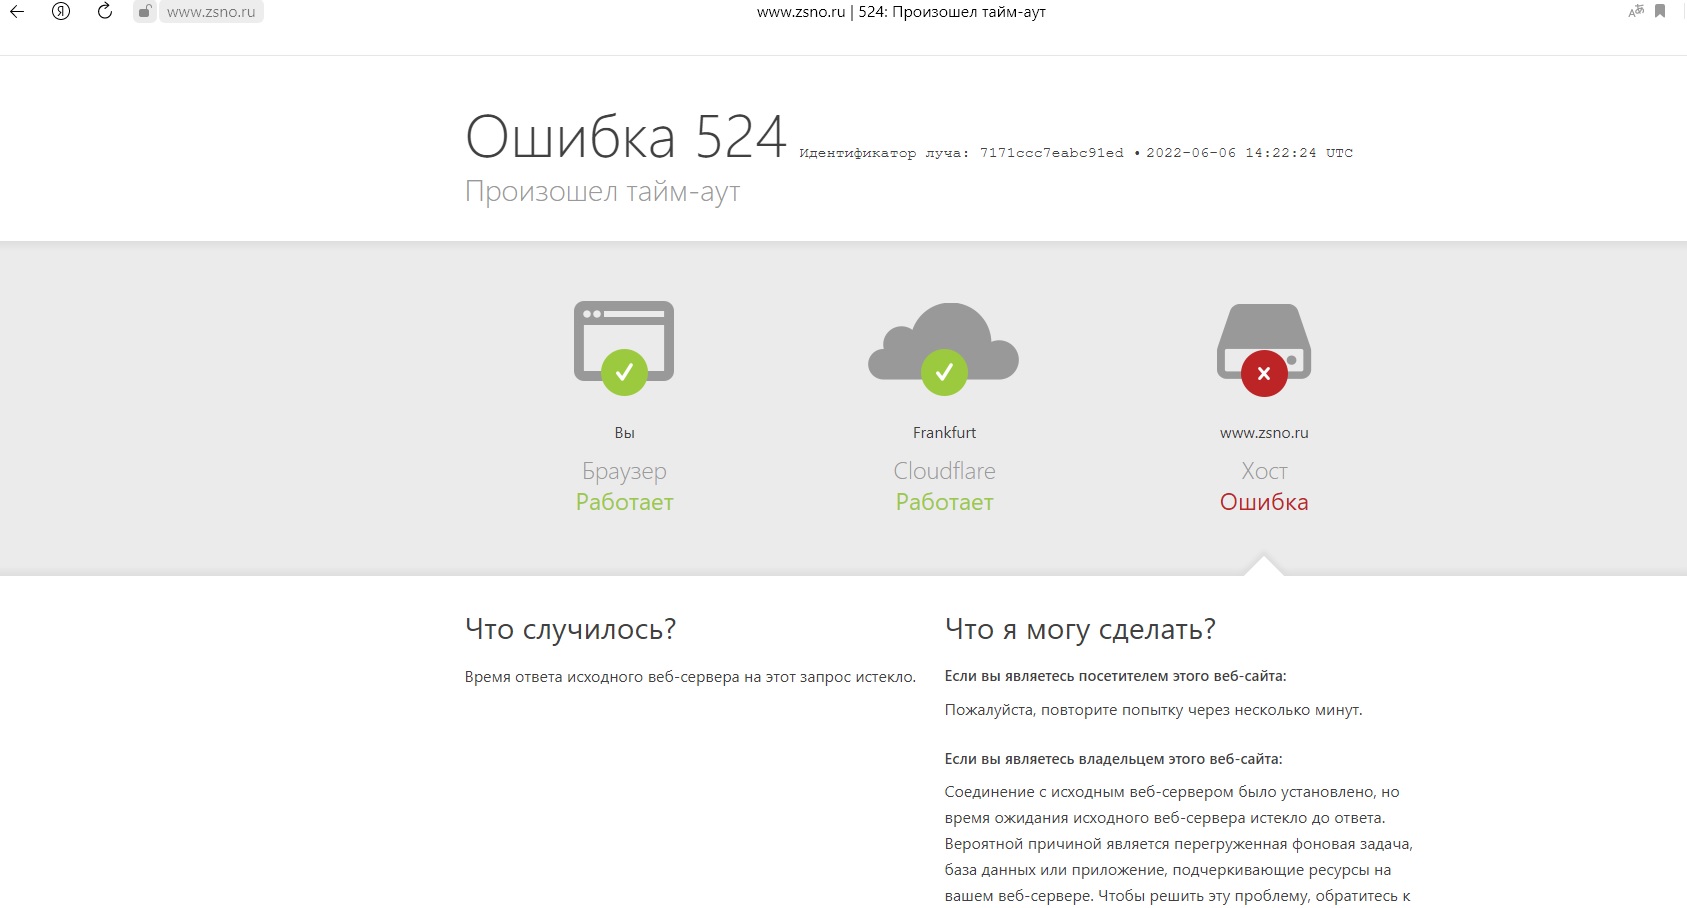 сайт законодательного собрания Нижегородской области подвергся хакерской атаке 6 июня